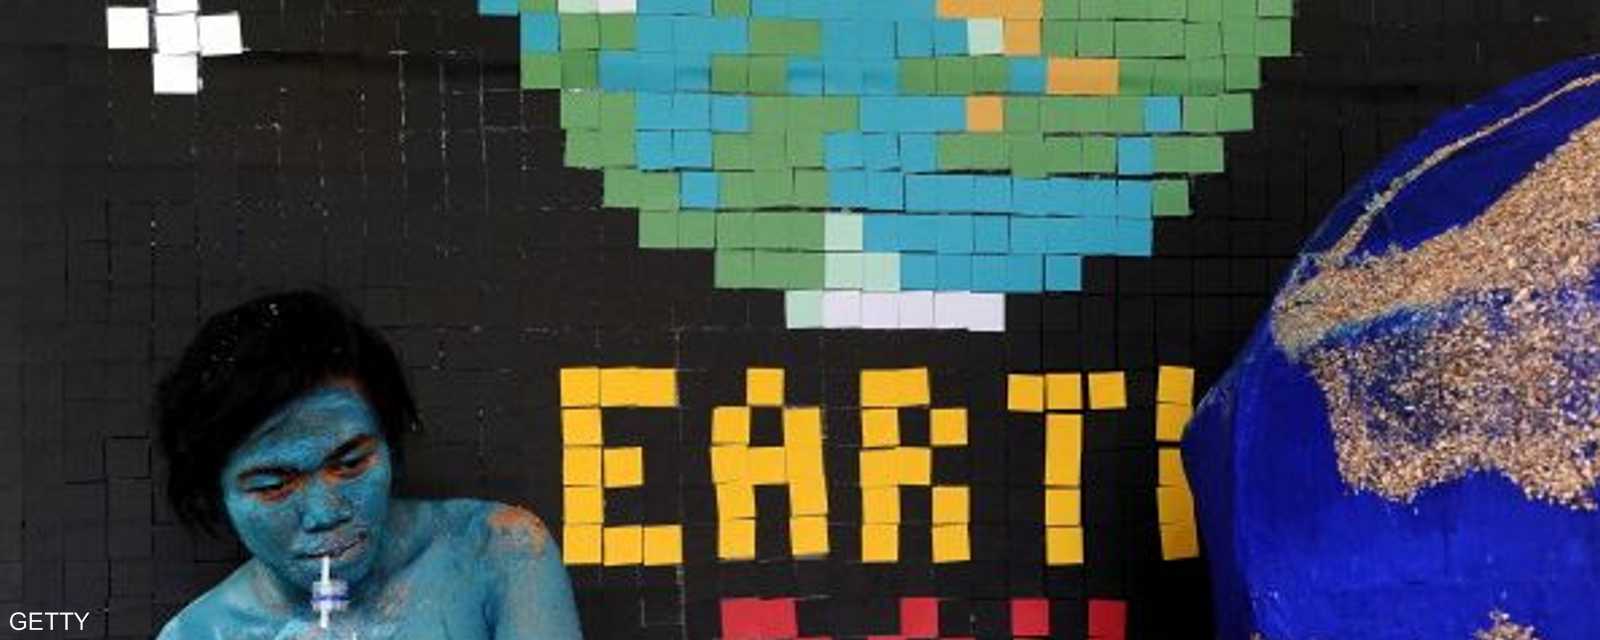 ناشط بيئي في فعالية لحملة تستهدف الحفاظ على البيئة وذلك خلال الاحتفال بيوم الأرض العالمي في إندونيسيا